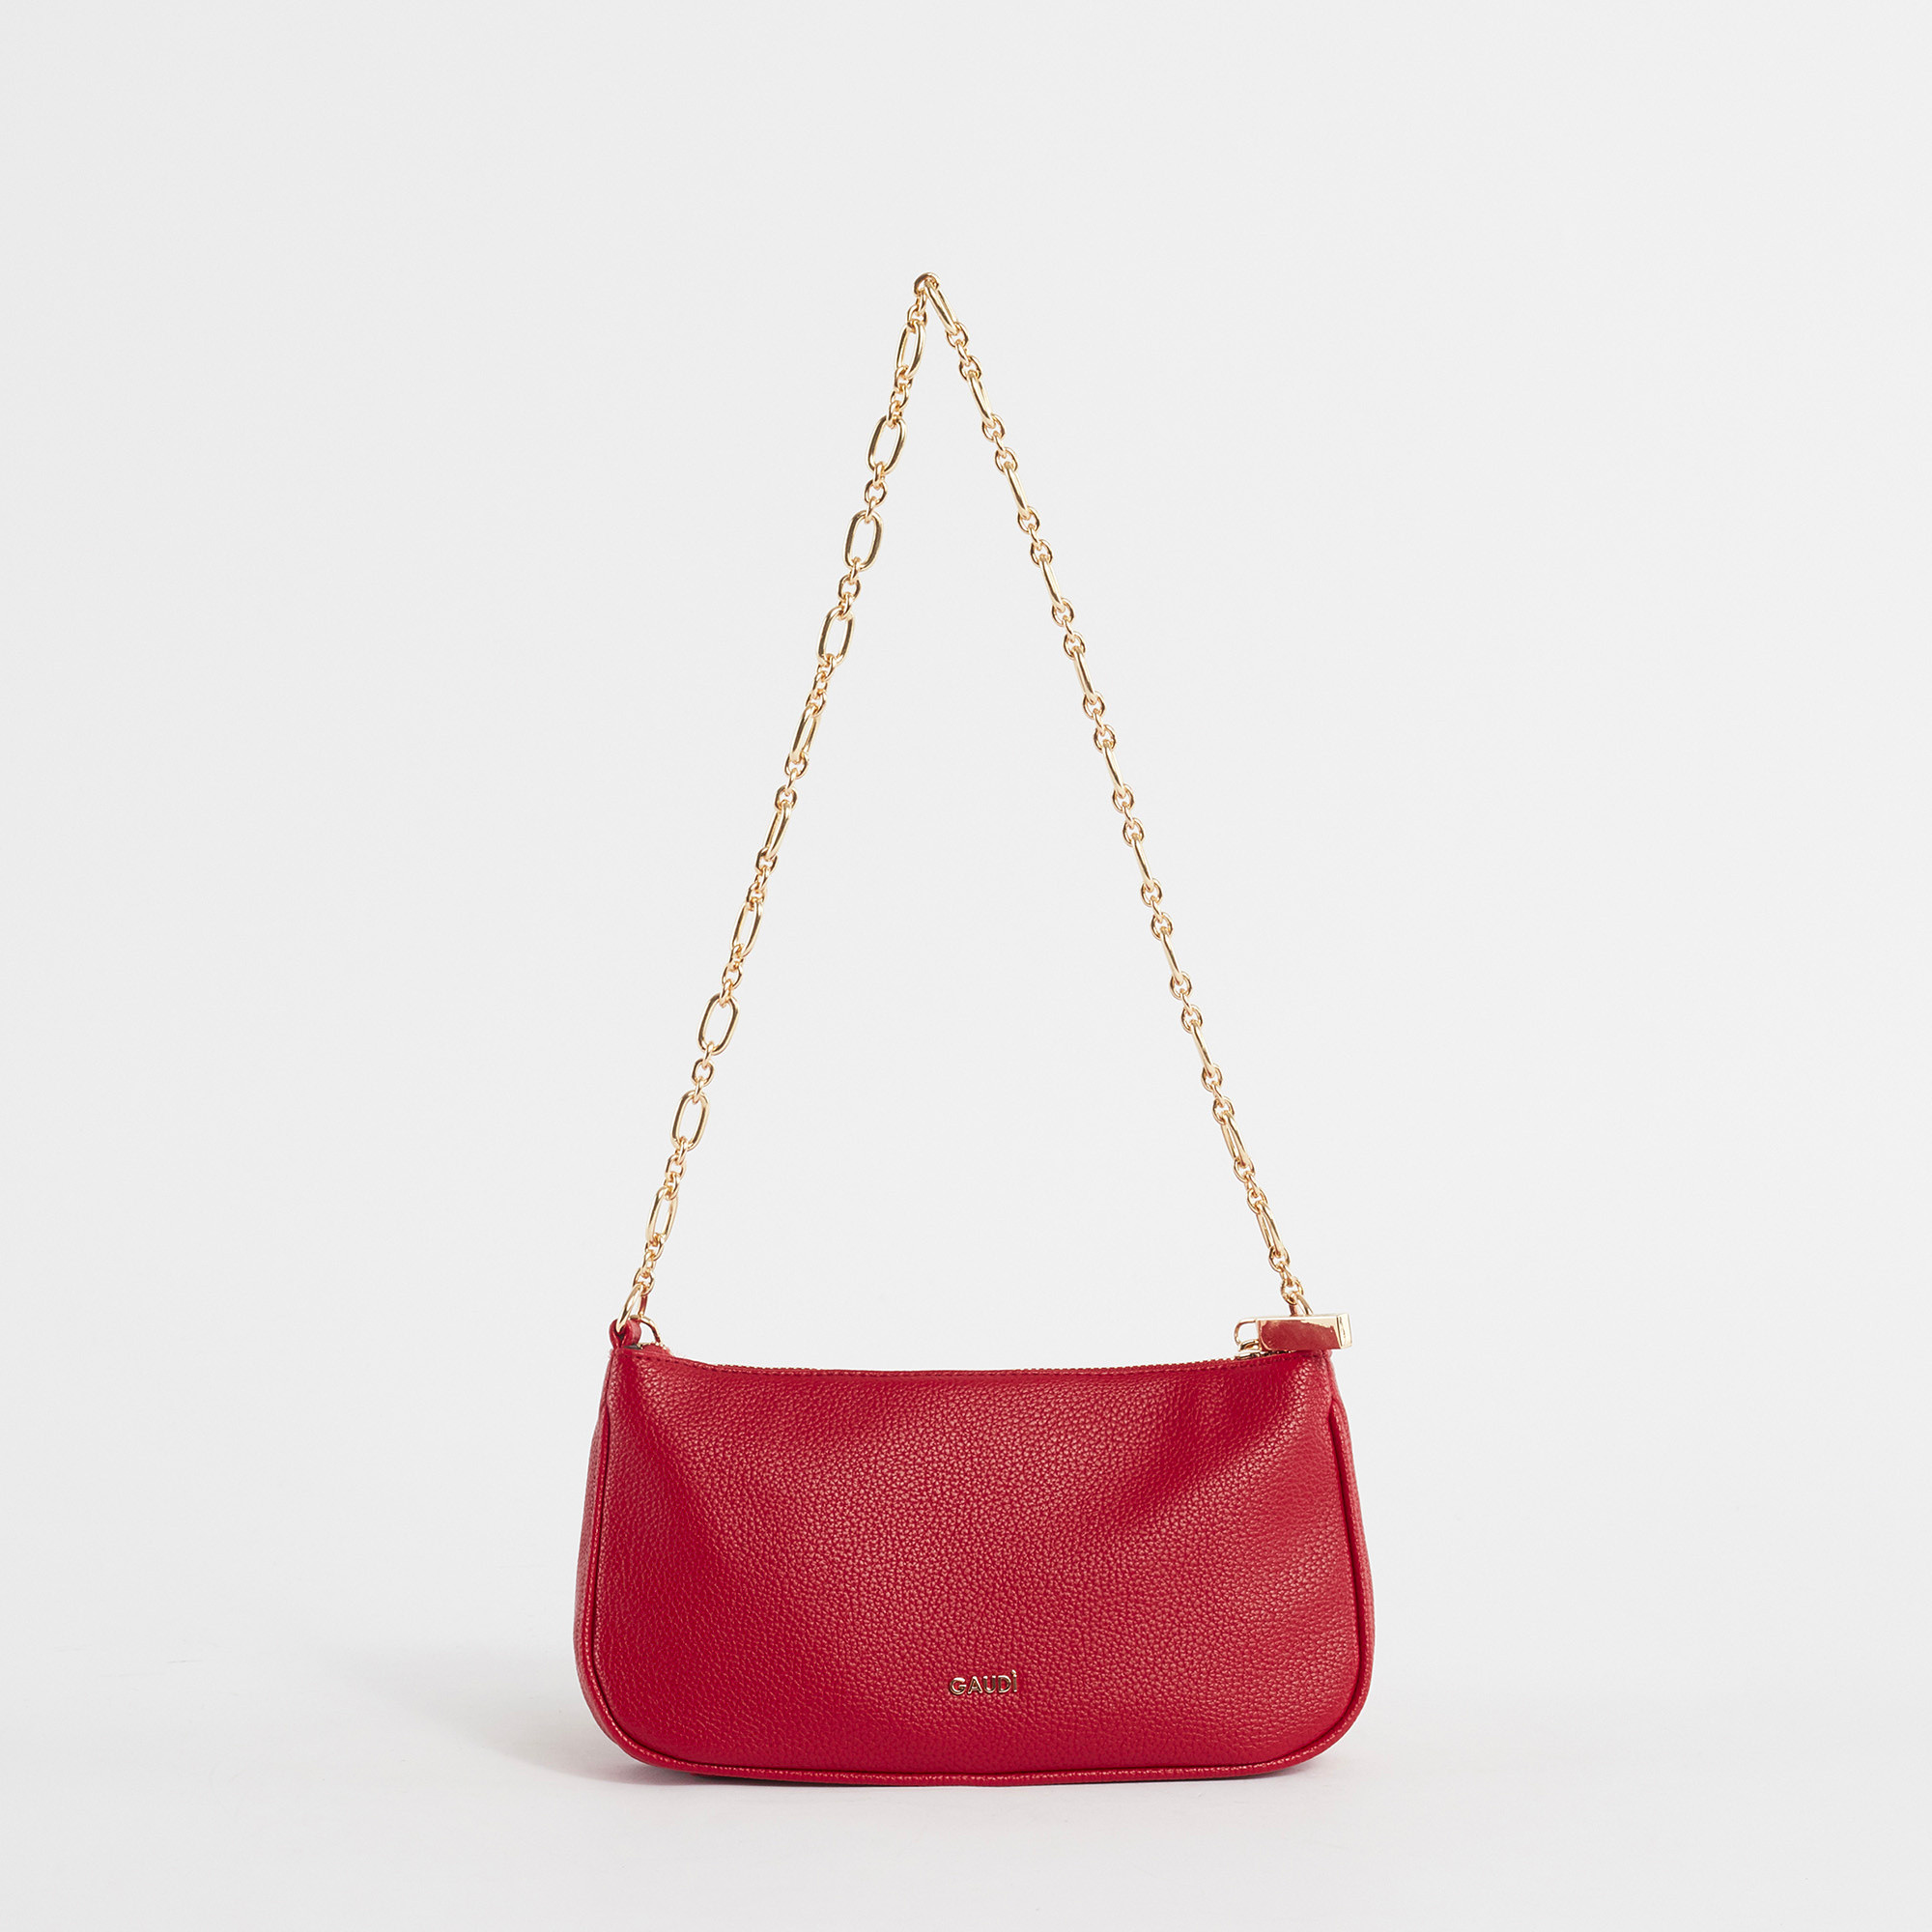 Gaudì - Venice shoulder bag, Red, large image number 2